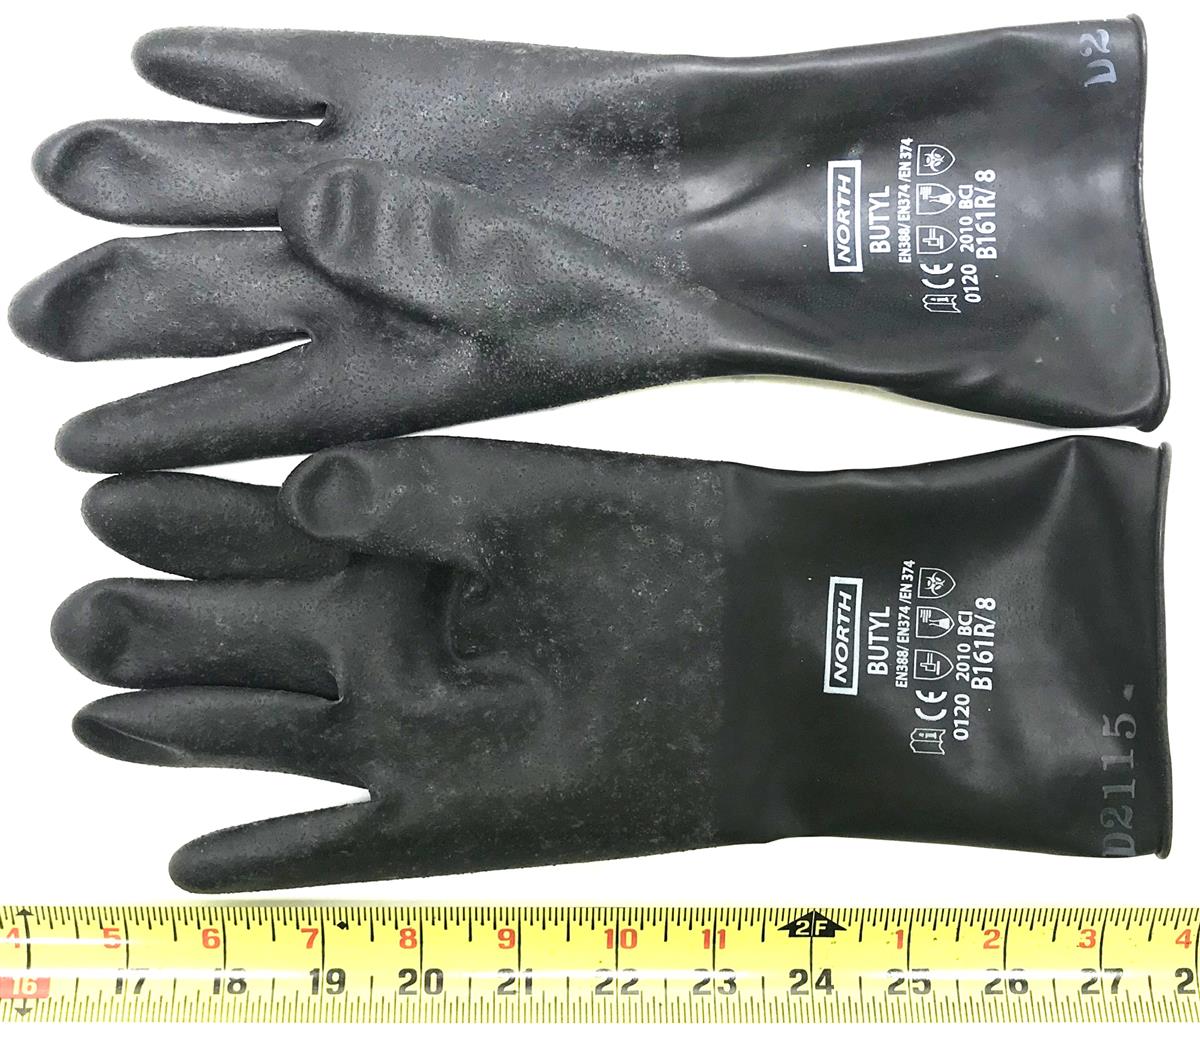 SP-2335 | Special Hazmat Equipment Gloves (5).jpg